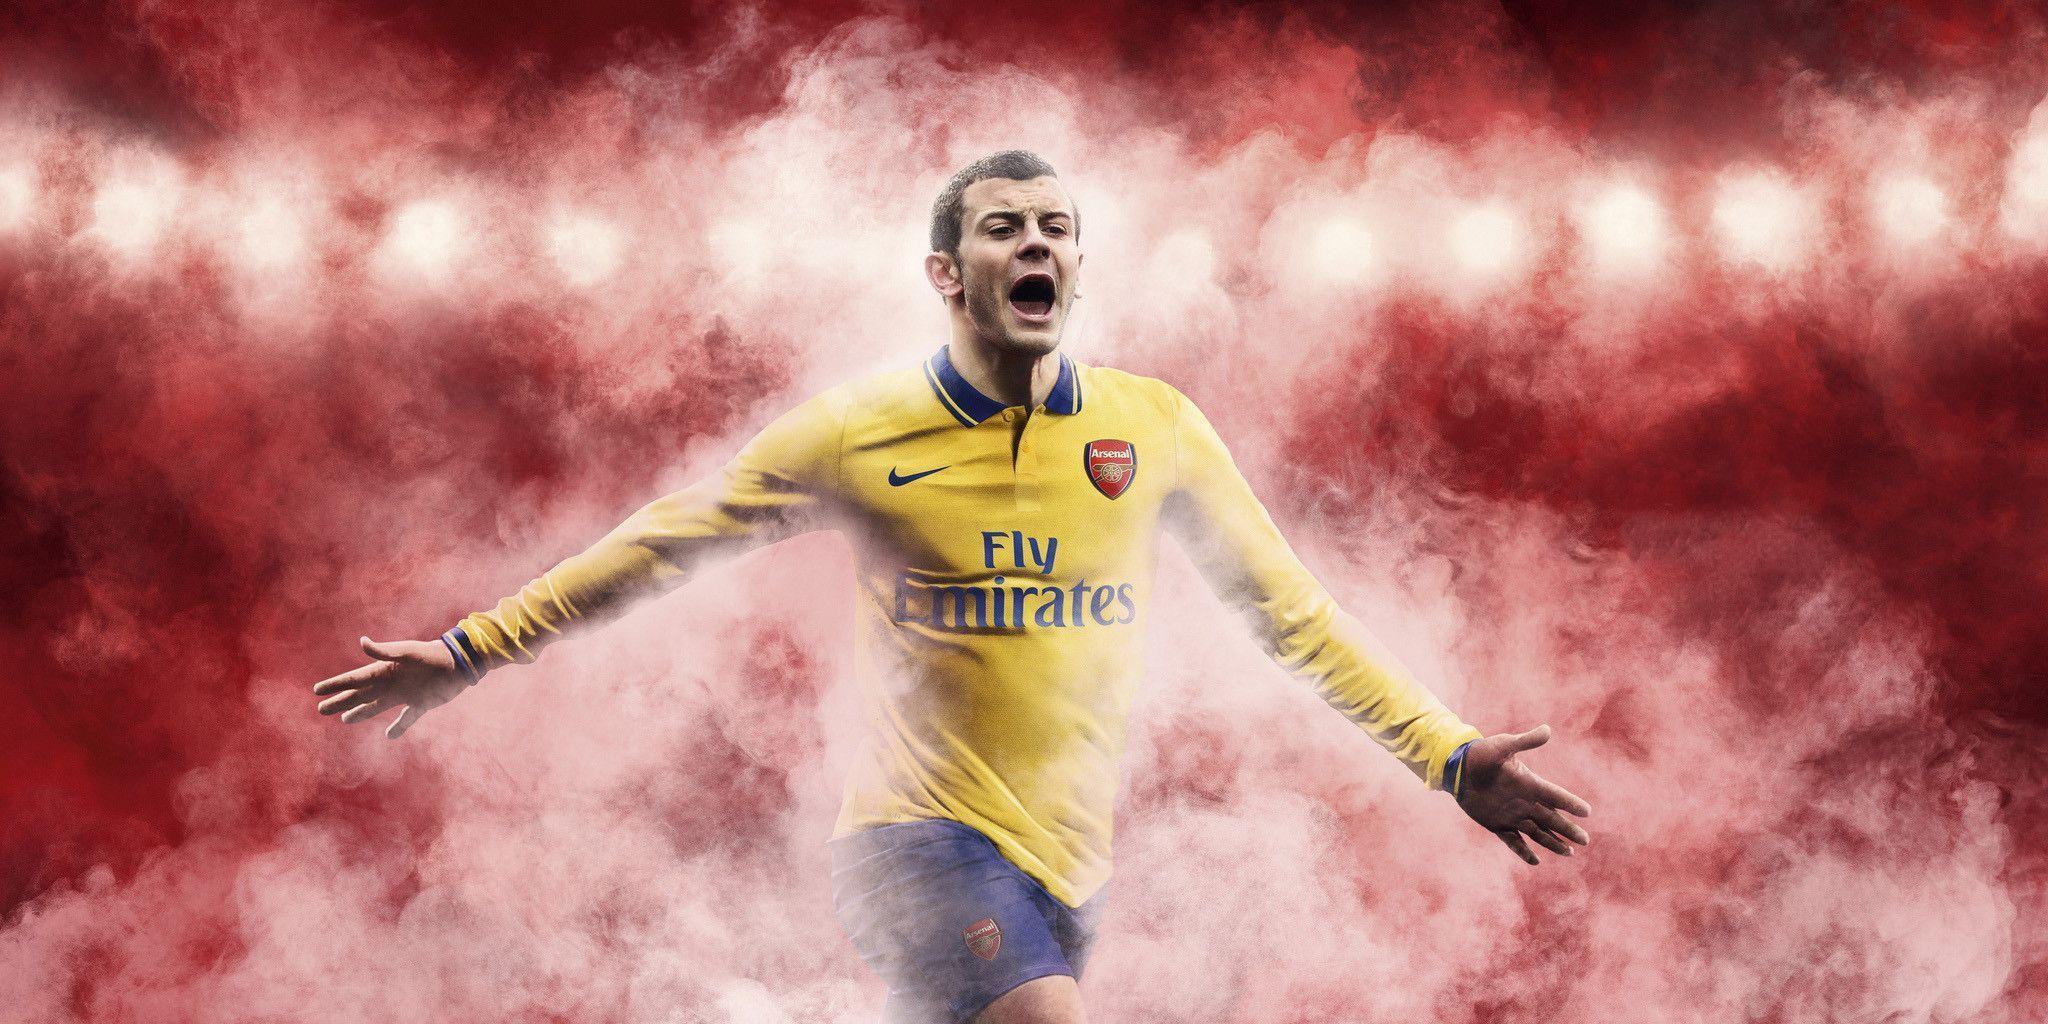 Jack Wilshere Arsenal FC 2014 Wallpaper Wide or HD. Male